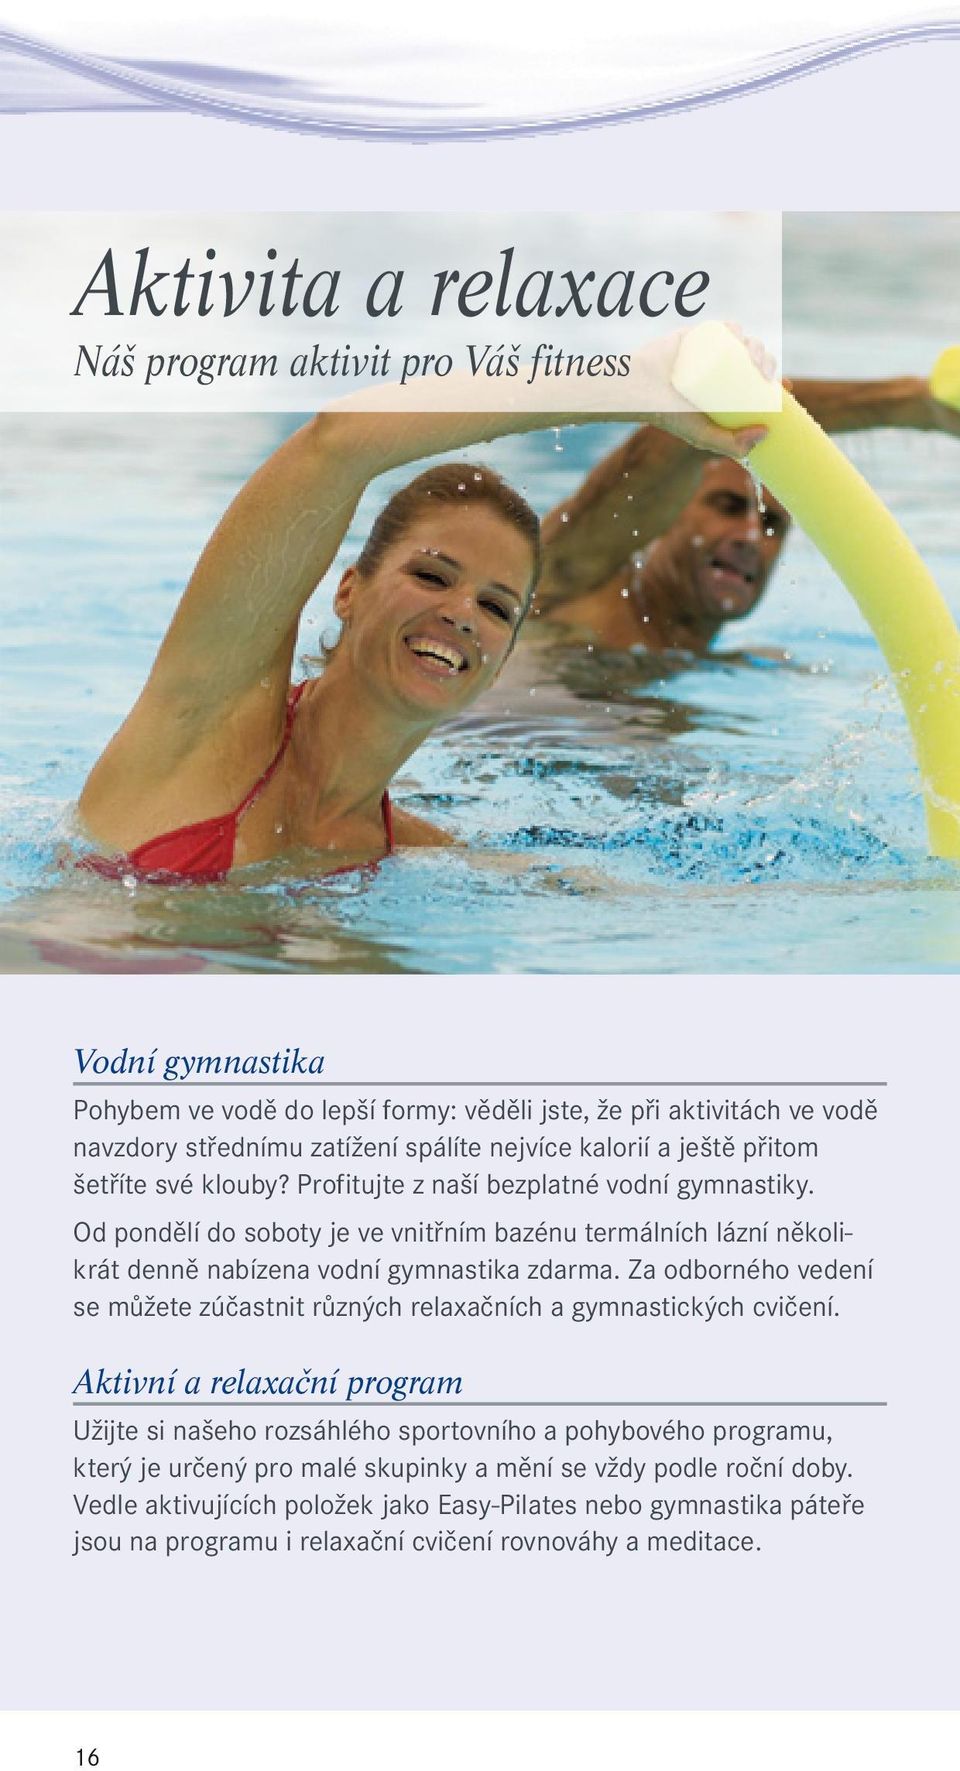 Od pondělí do soboty je ve vnitřním bazénu termálních lázní několikrát denně nabízena vodní gymnastika zdarma.